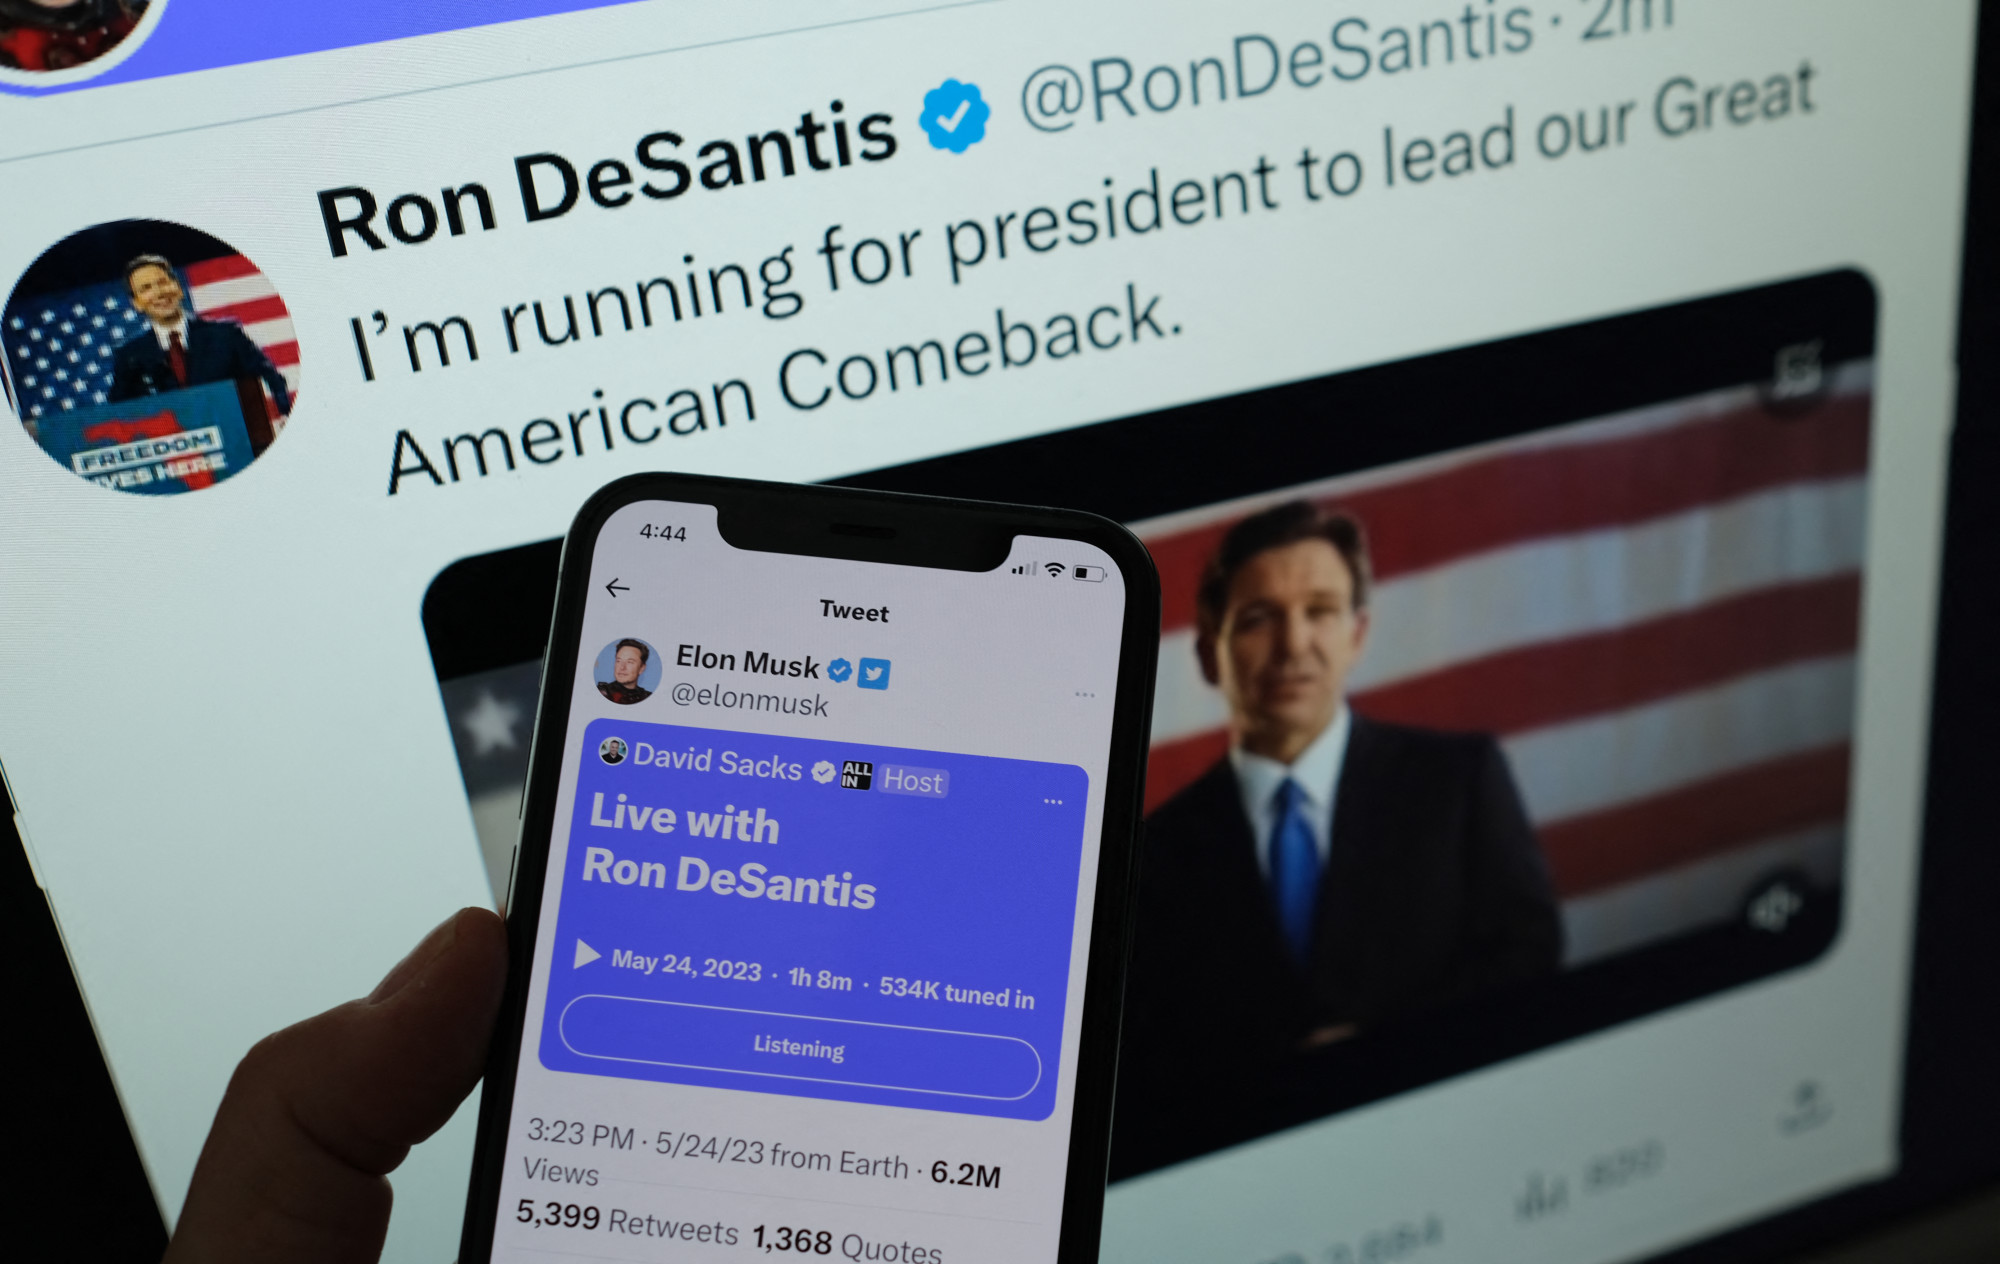 A Twitter technológiai összeomlása megzavarta Ron DeSantis 2024-es elnökválasztási kampányának bejelentését